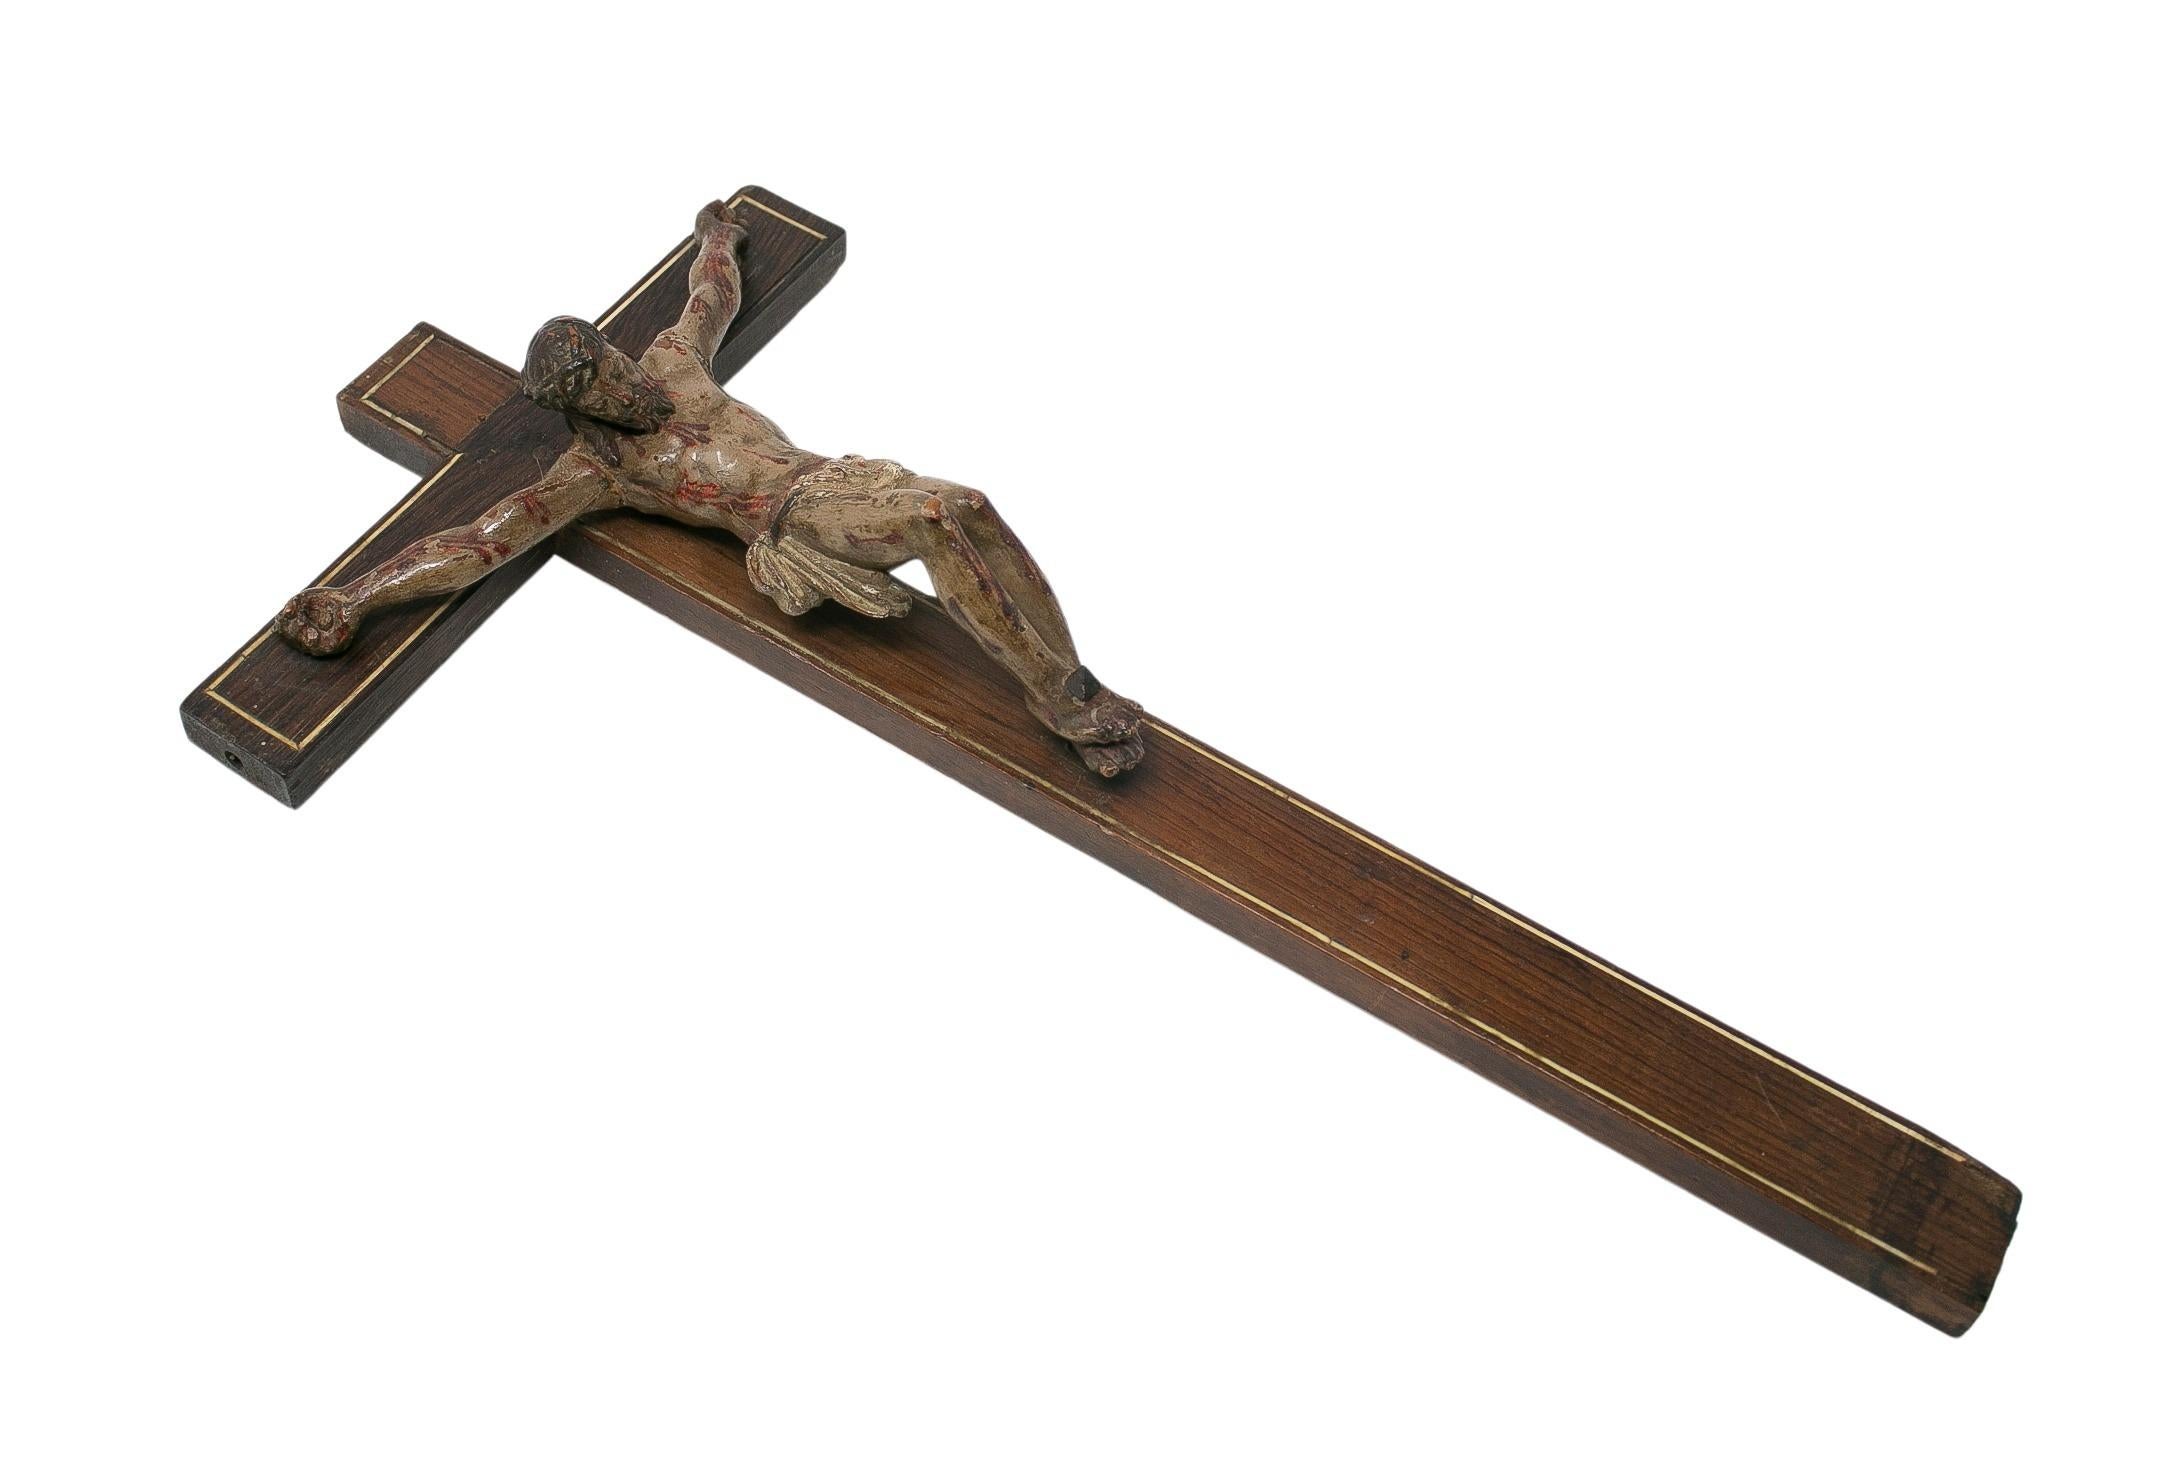 Sculpture espagnole du XVIIe siècle représentant un crucifix en bois.